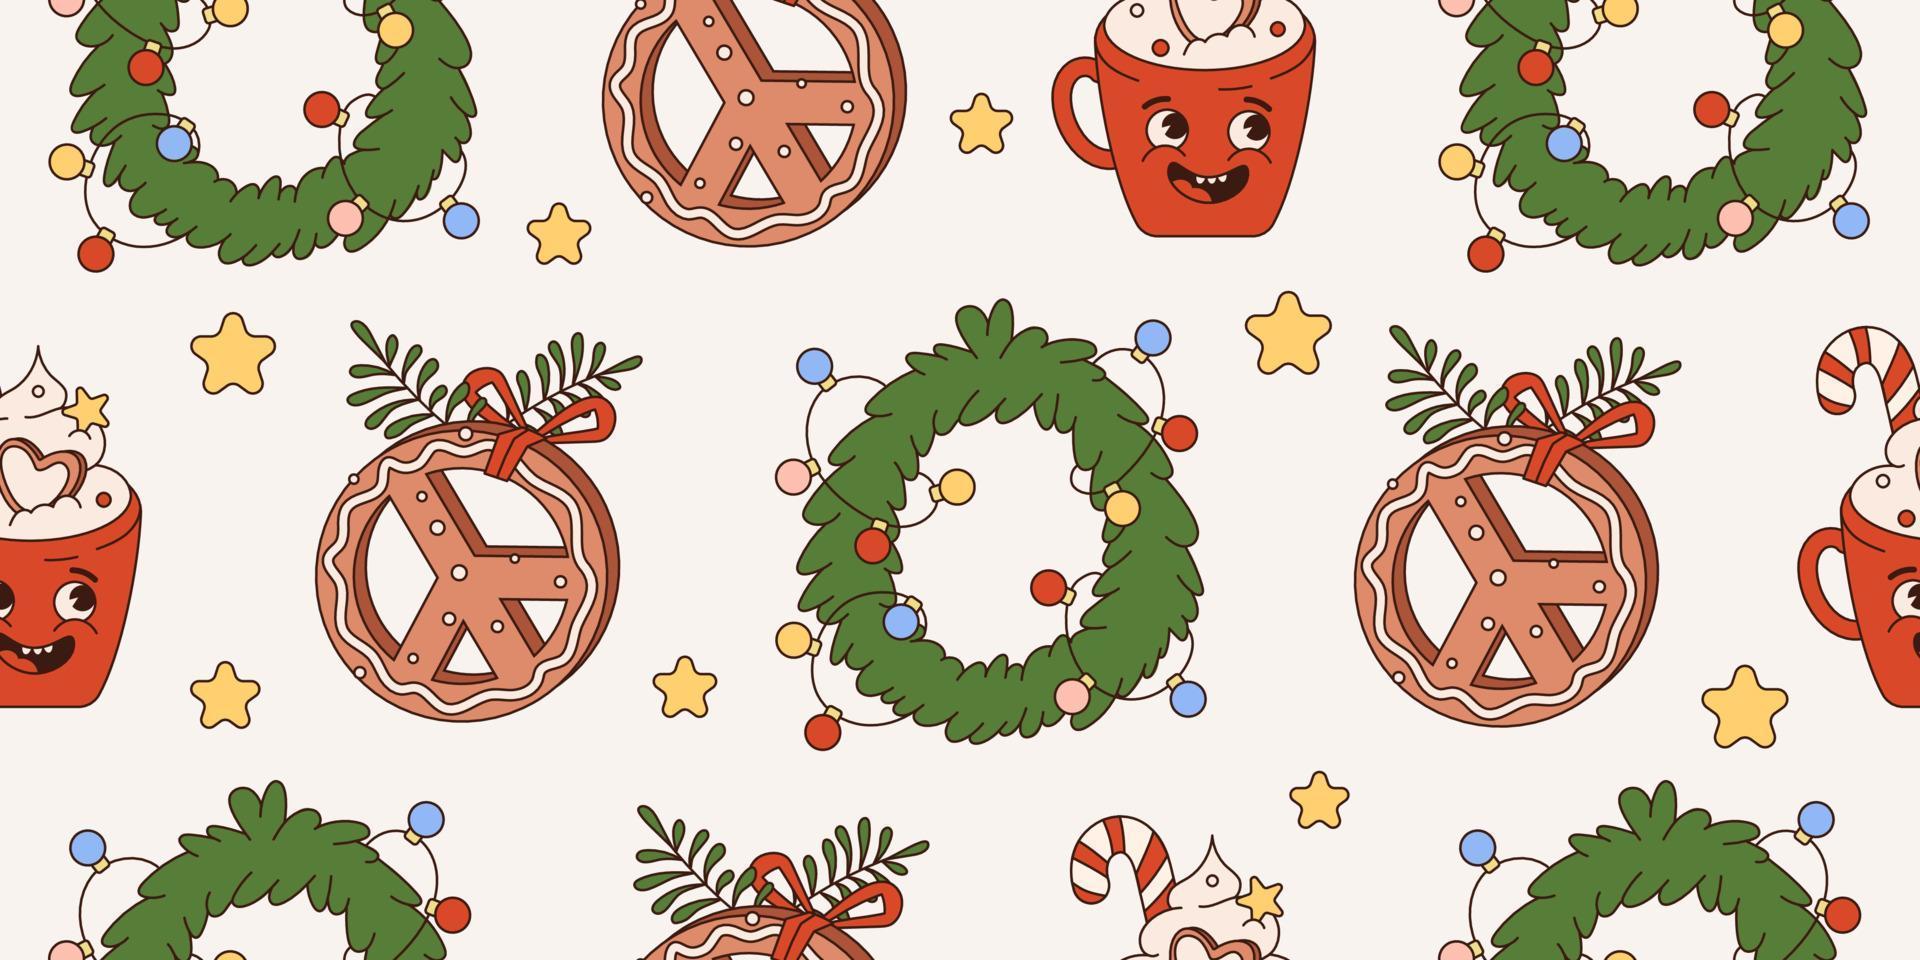 Groovy hippie navidad de patrones sin fisuras con elementos y personajes de dibujos animados retro. estilo moderno de los 70. Feliz navidad y próspero año nuevo. fondo de la vendimia vector